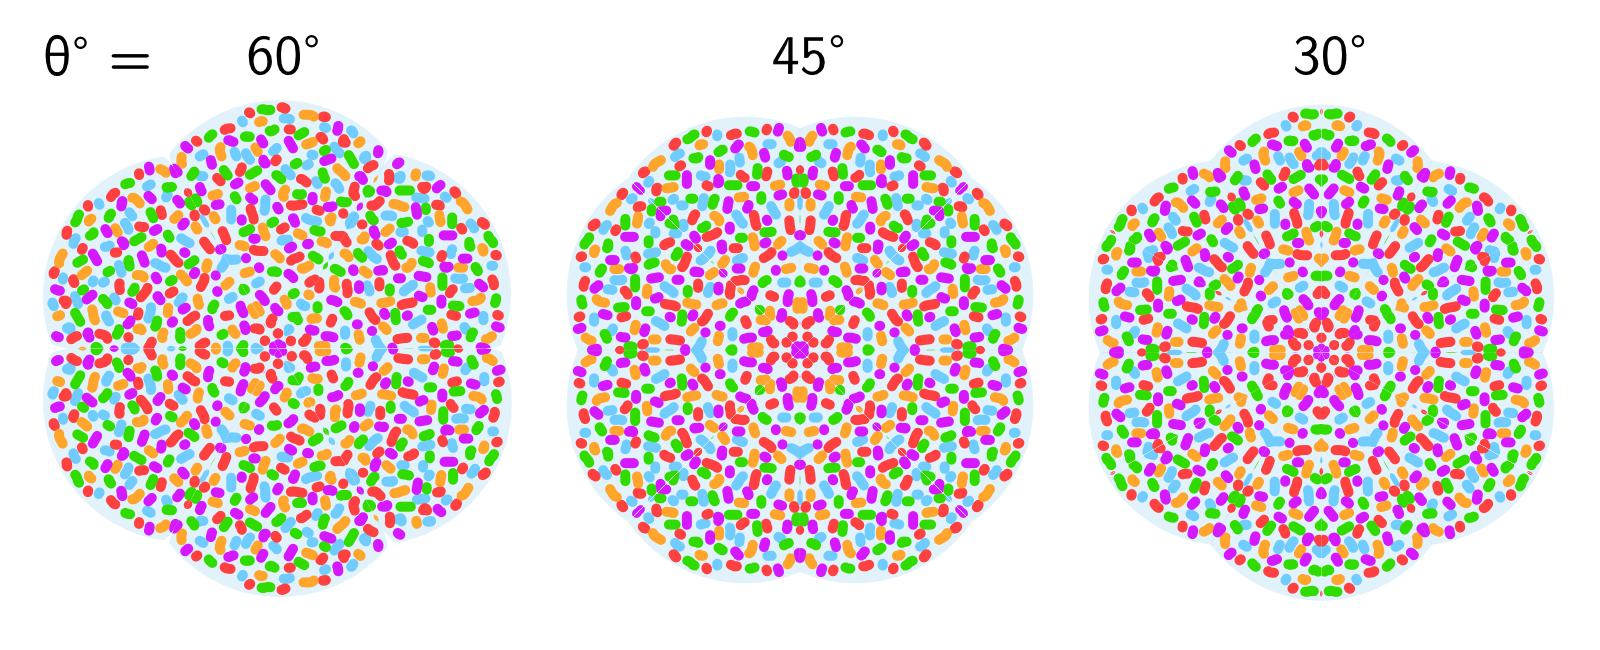 De mandala-achtige patronen uit verschillende hoeken tussen de twee spiegels in de caleidoscoop